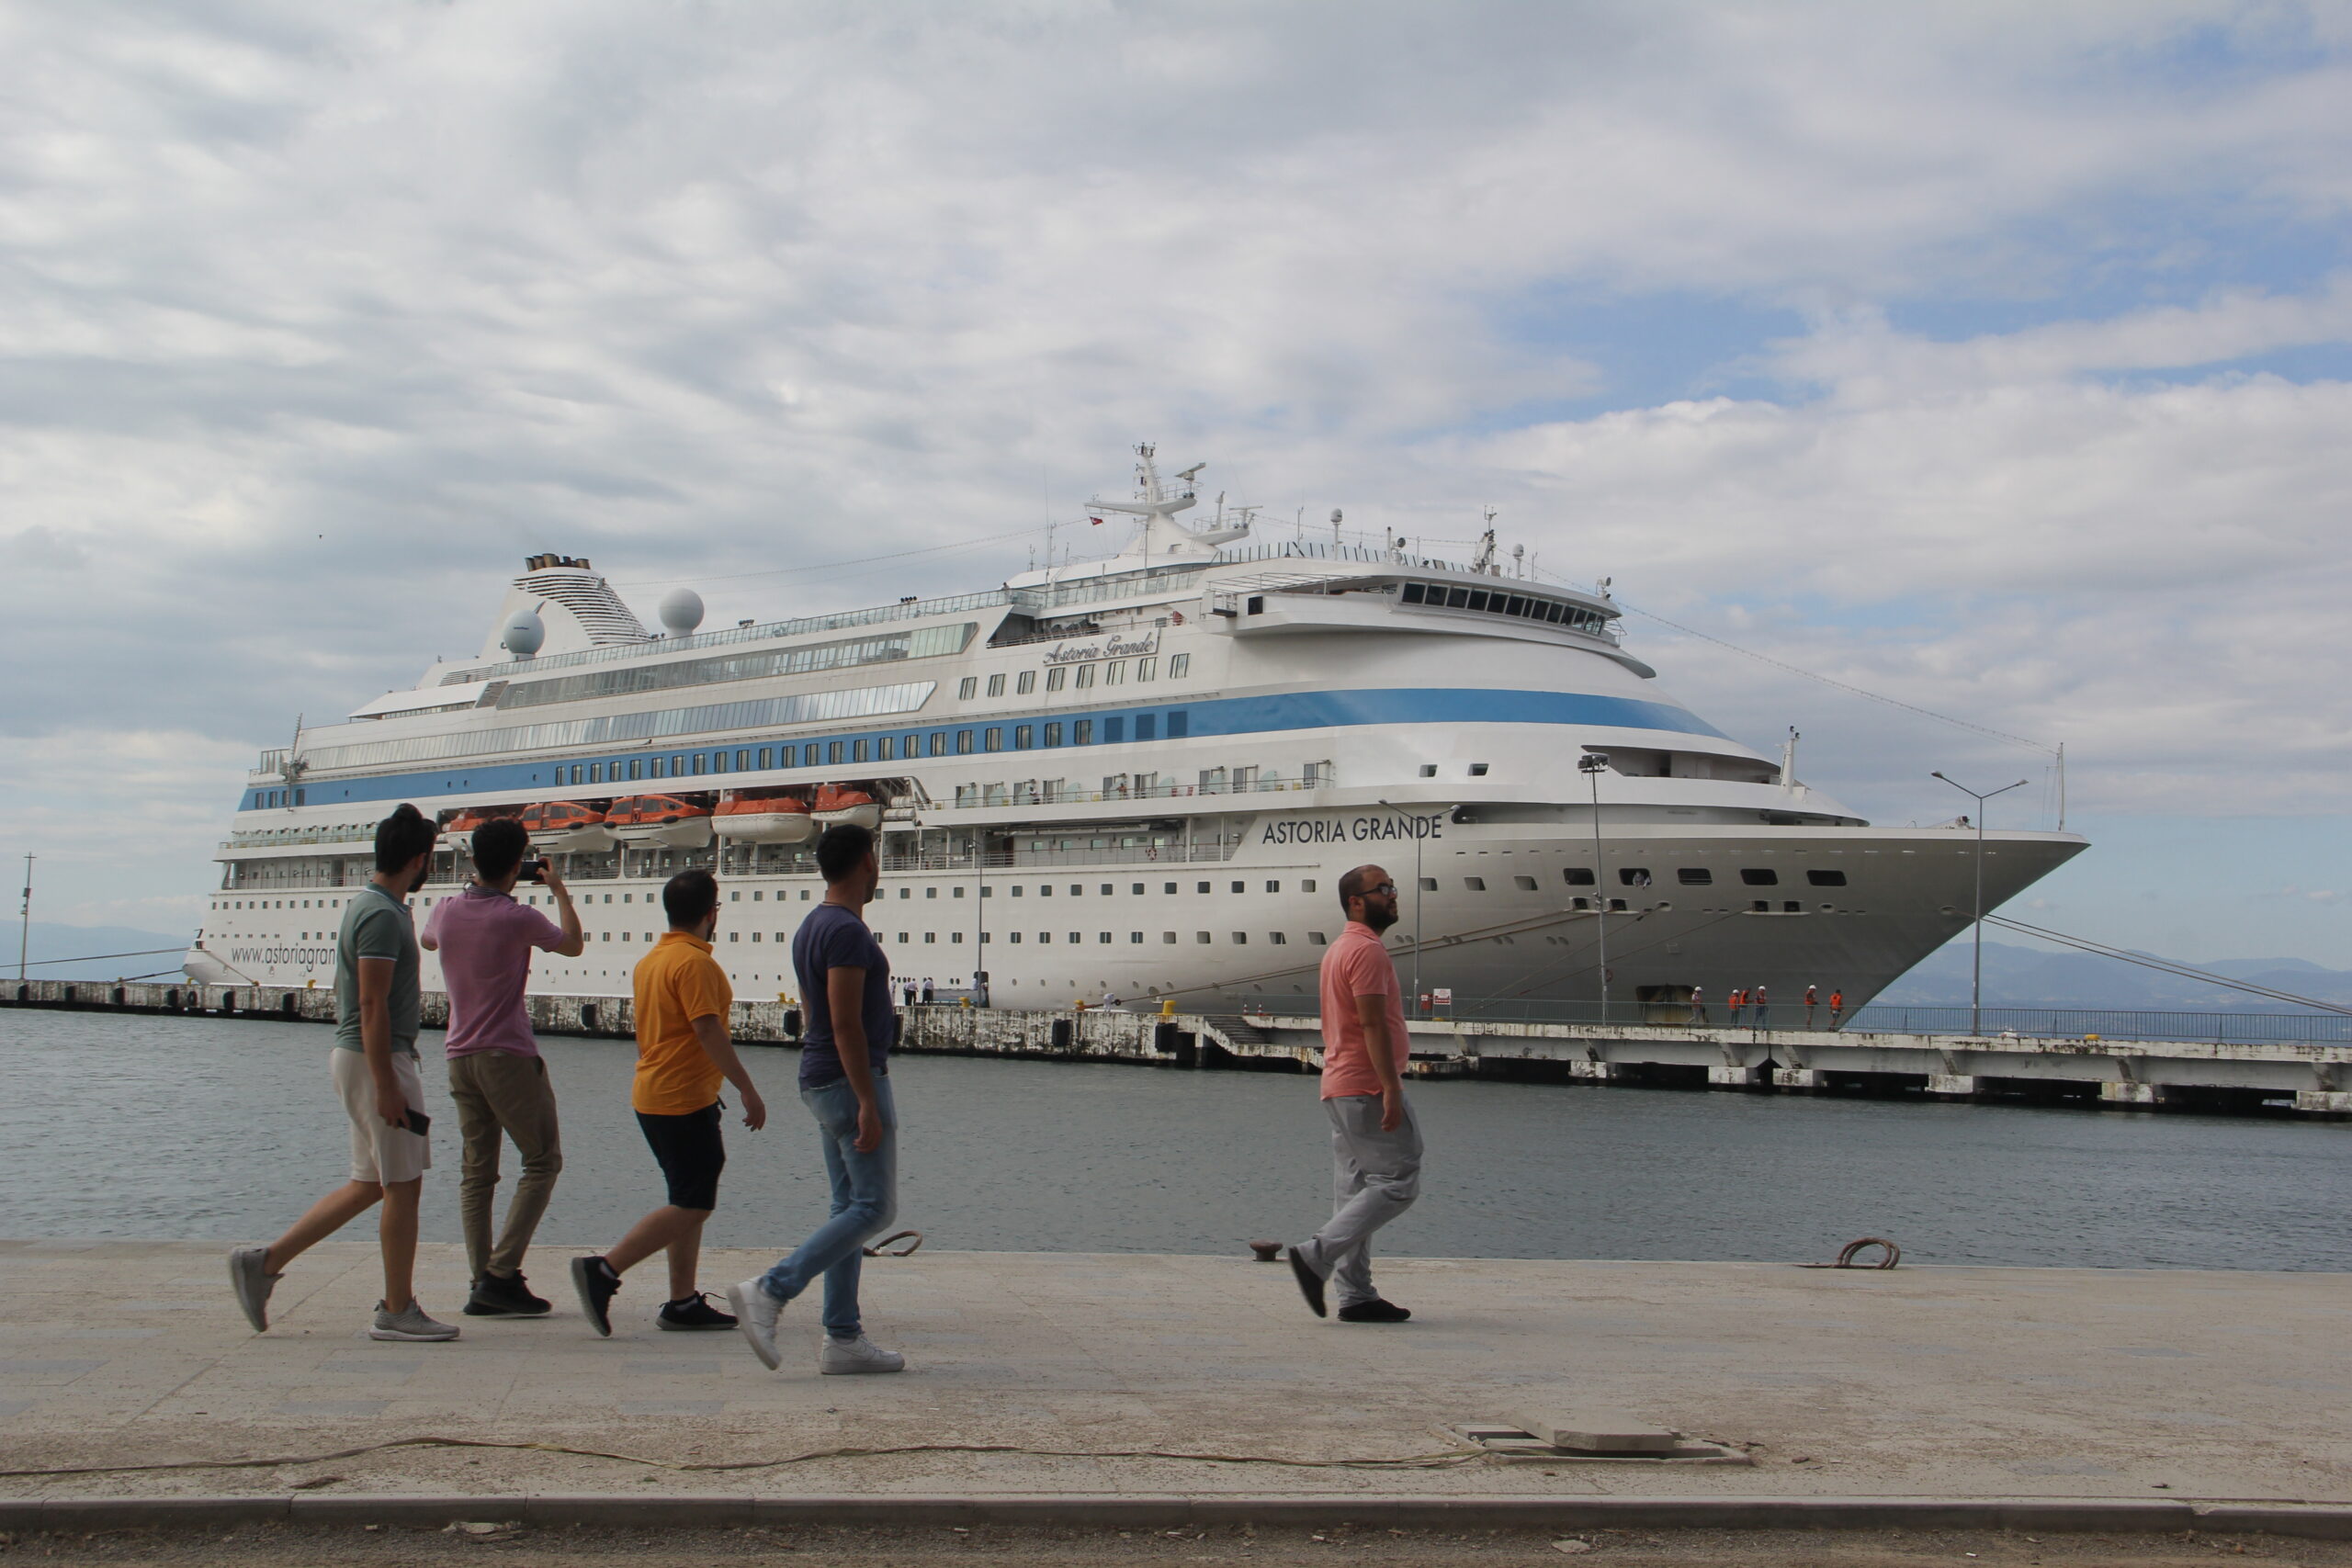 Panama bandıralı kruvaziyer Astoria Grande 607 yolcusuyla Sinop’a geldi